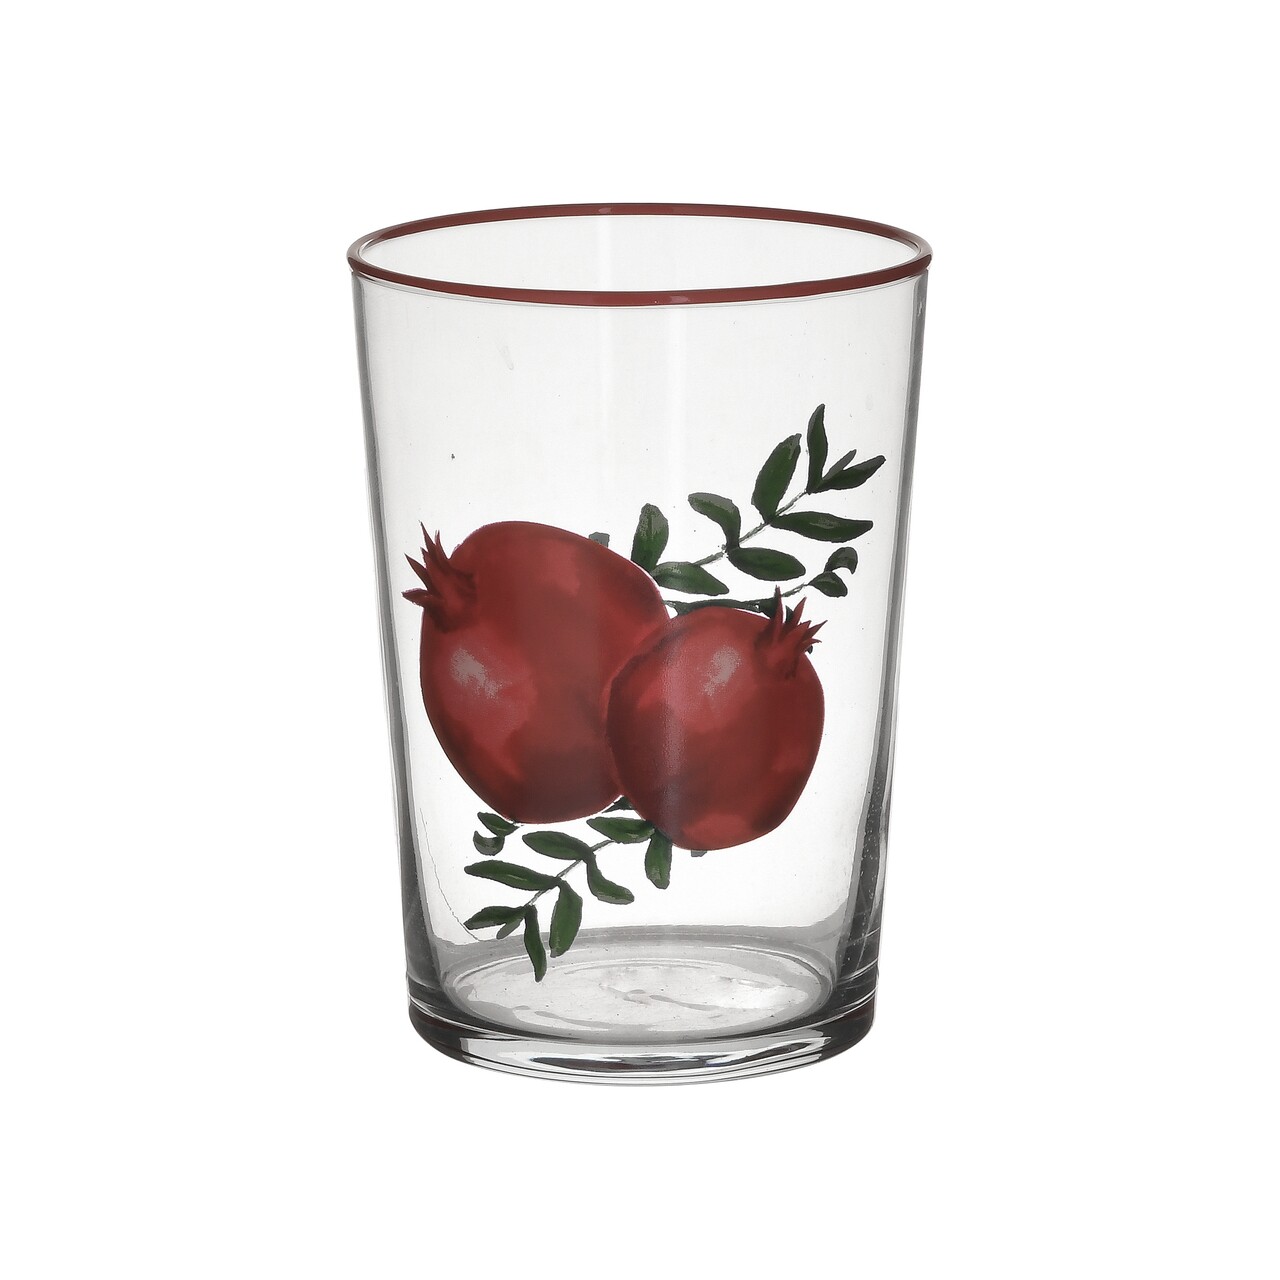 6 Db Vizespohár Pomegranate, InArt, 8.5x15.5 Cm, 510 Ml, üveg